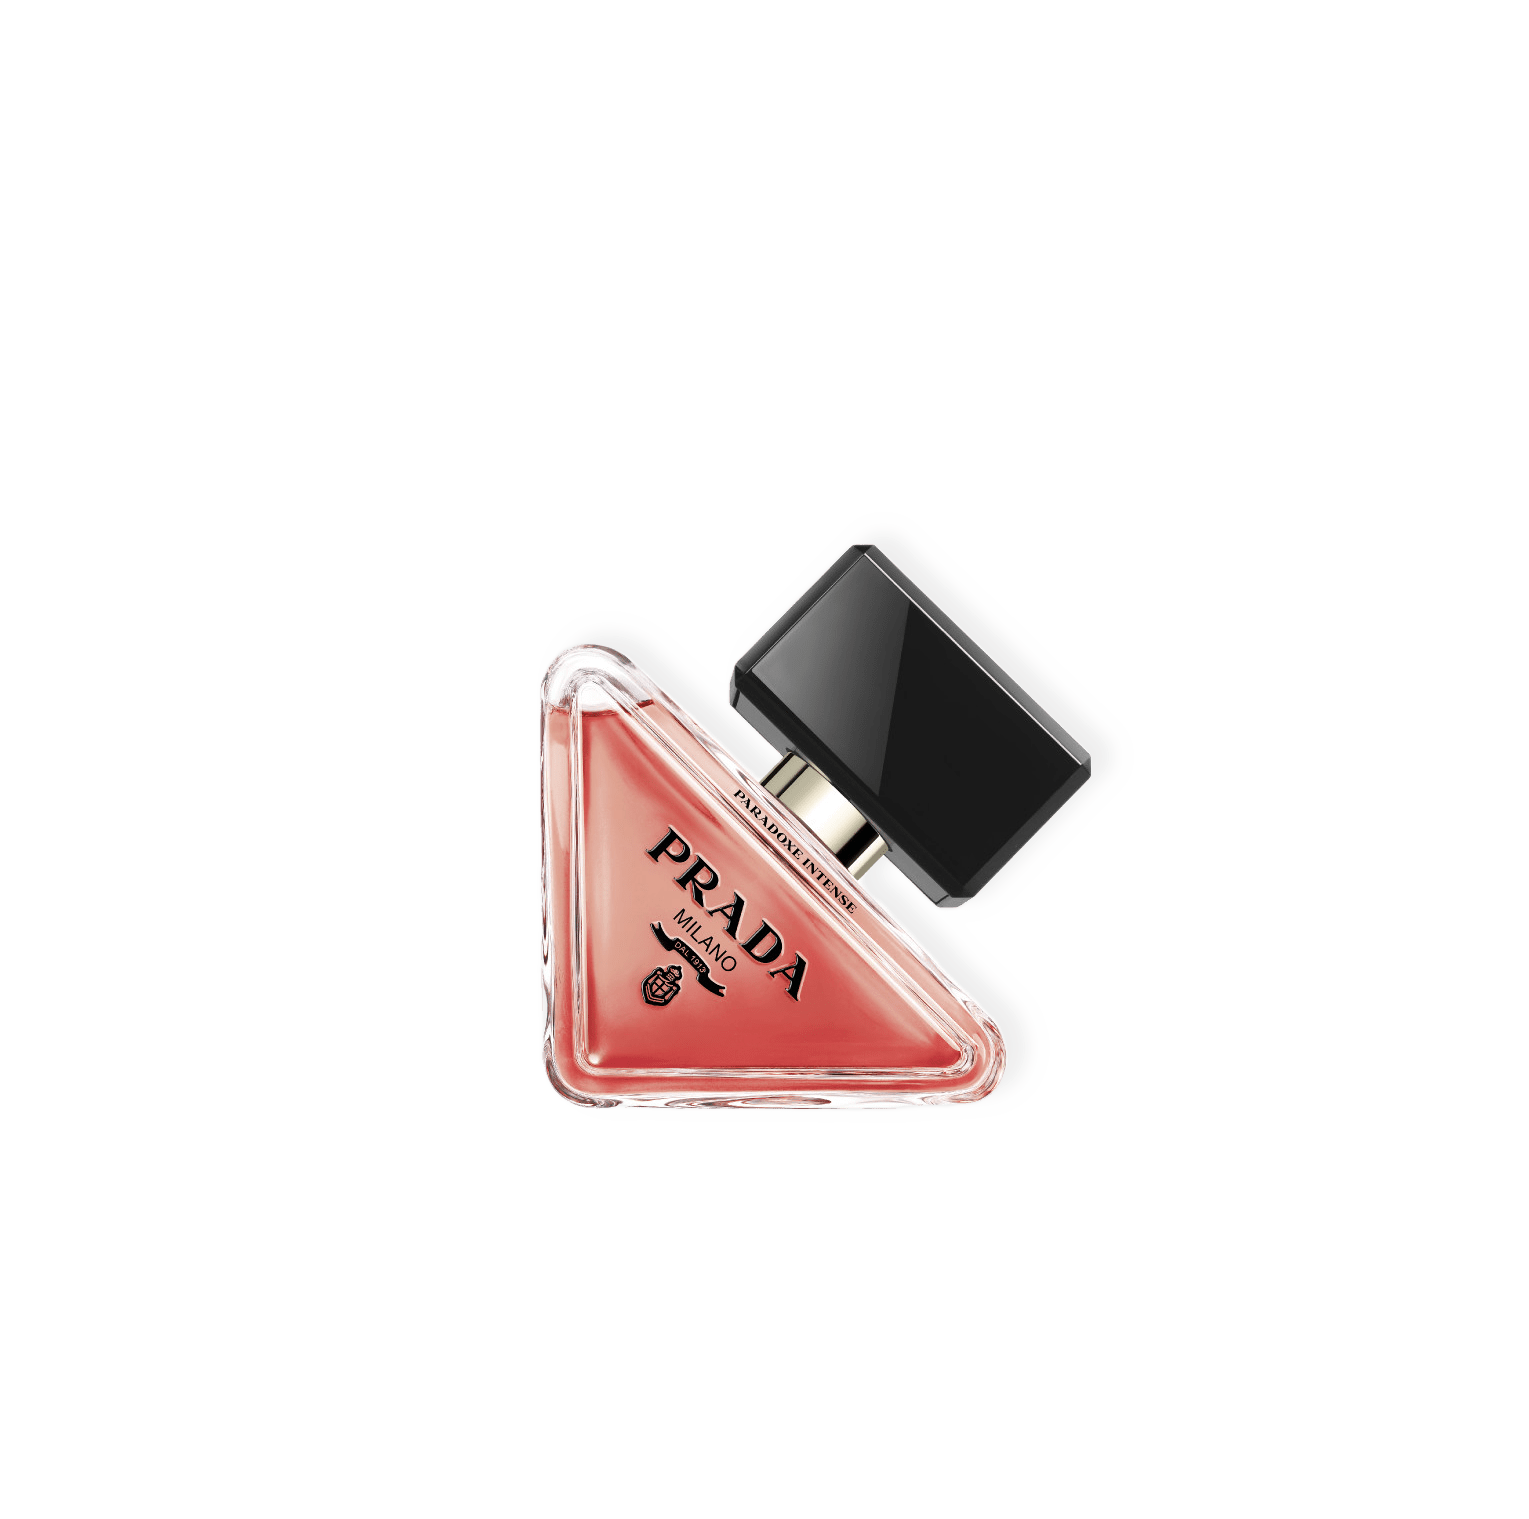 Paradoxe Intense Eau de Parfum 30ml från Prada